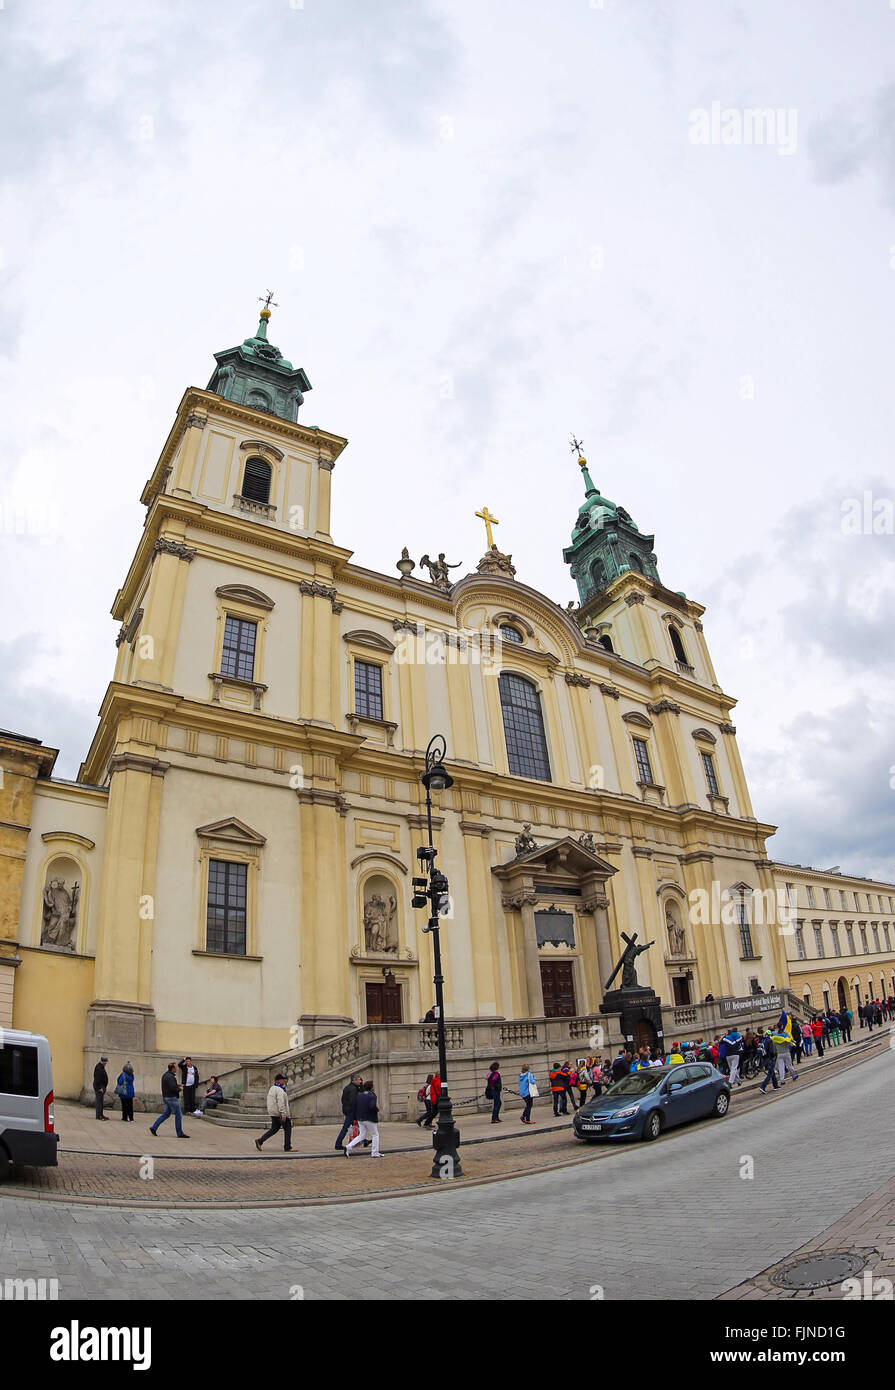 Church of the Holy Cross (Bazylika Swietego Krzyza) in Warsaw, Poland Stock Photo